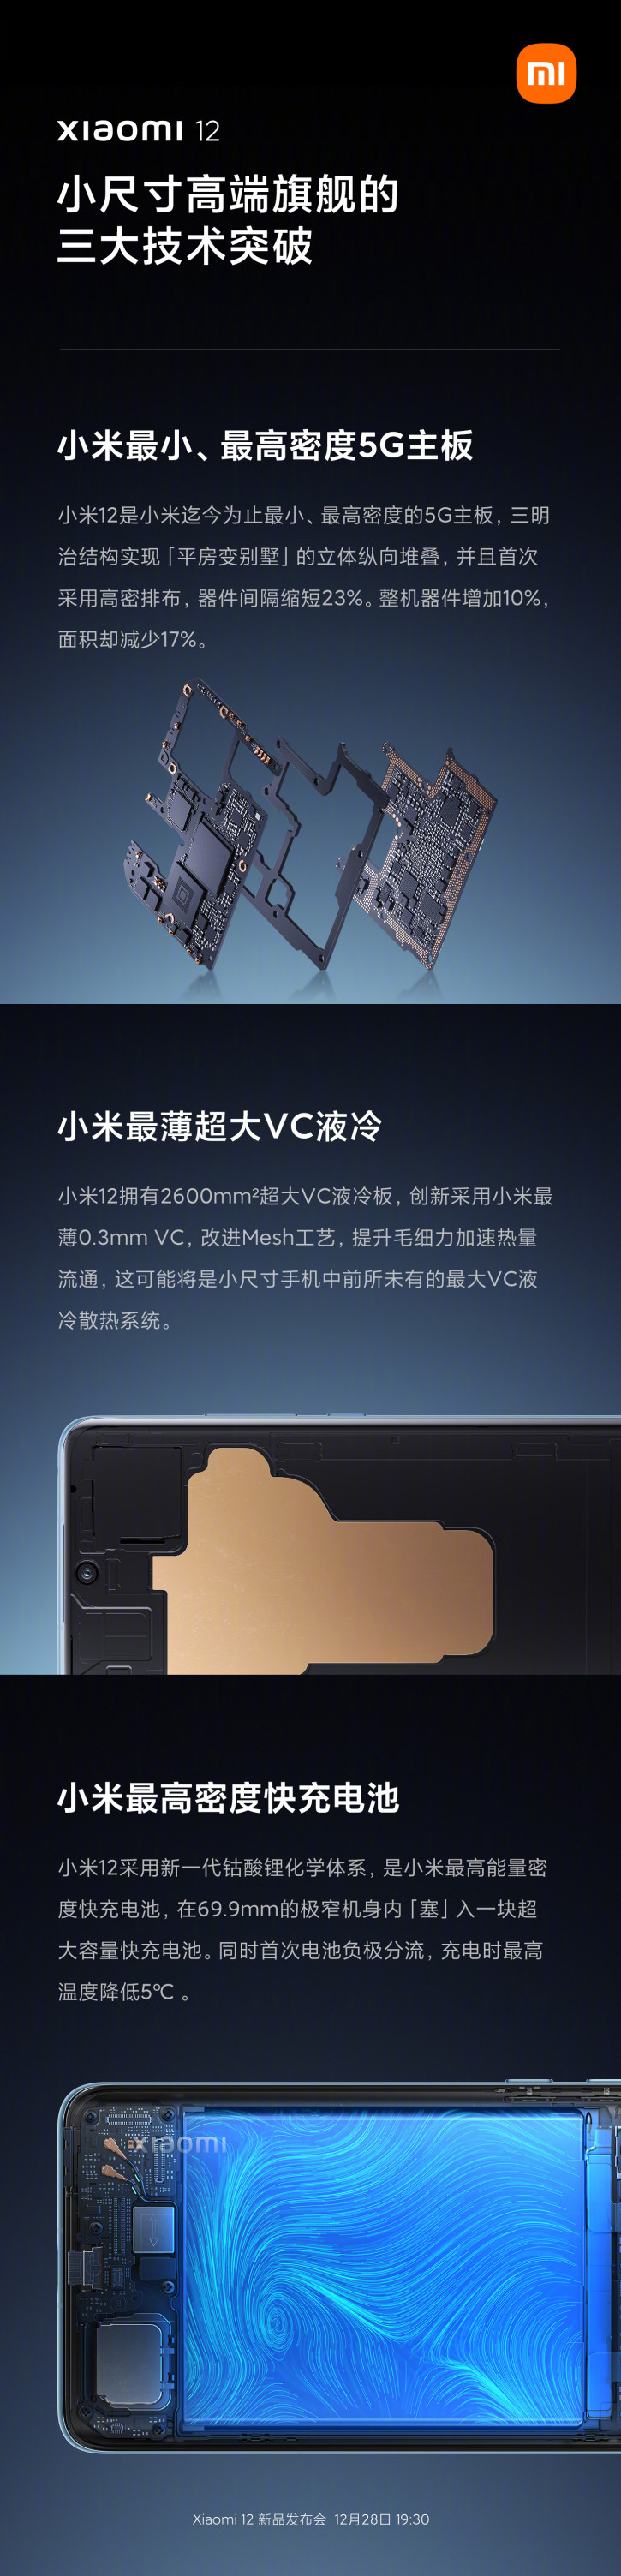 Xiaomi рассказала, как стал возможет компактный флагман Xiaomi 12